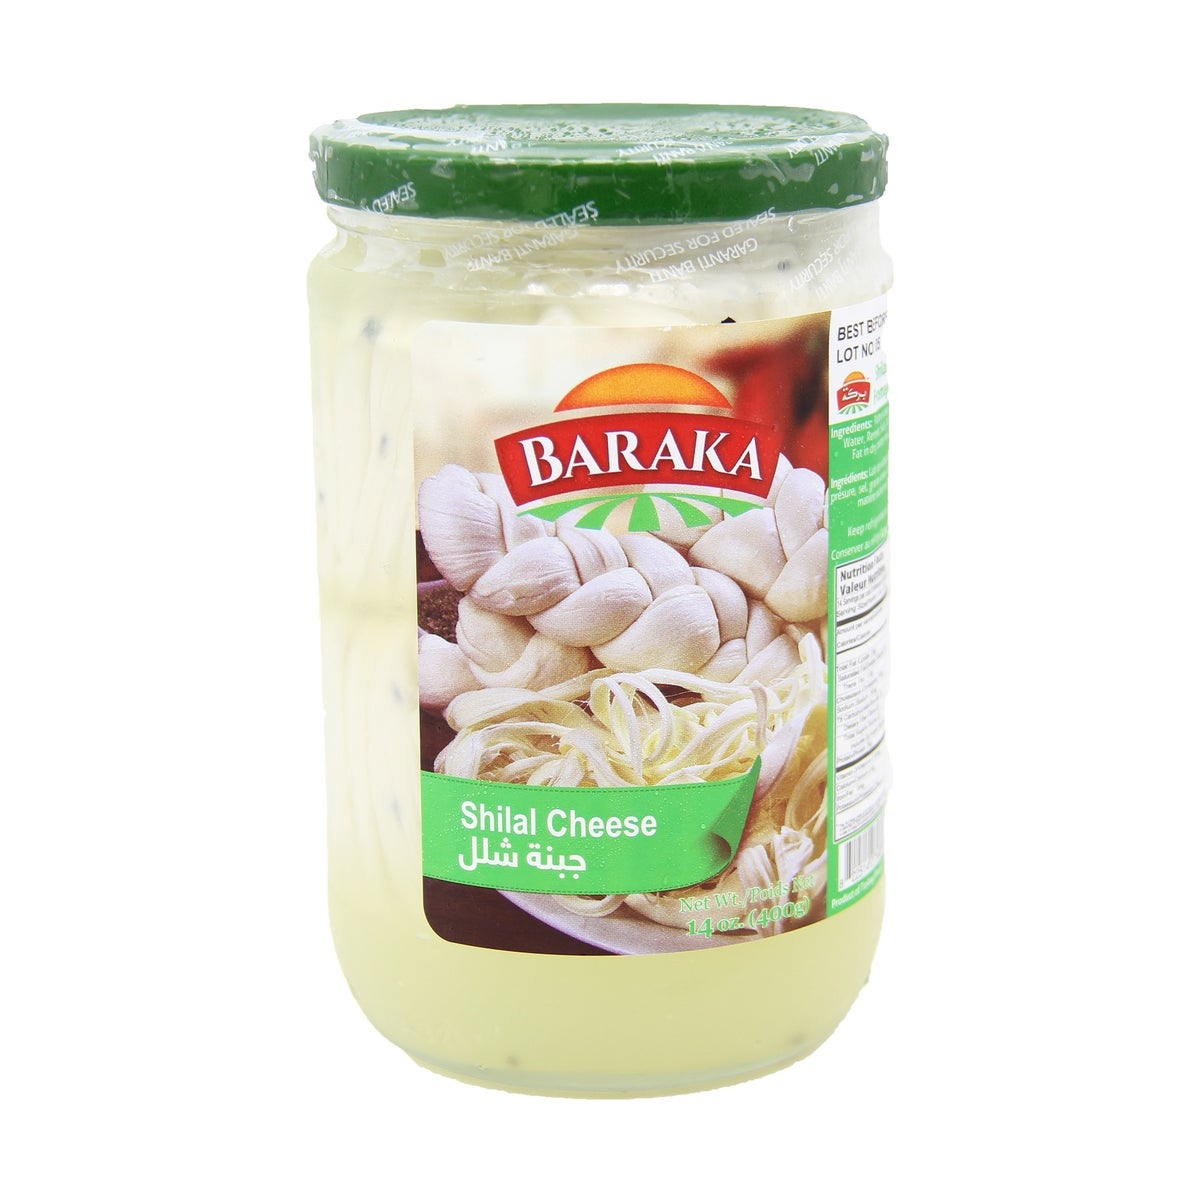 Shilal Cheese in glass jar  "Baraka" 400g x 6